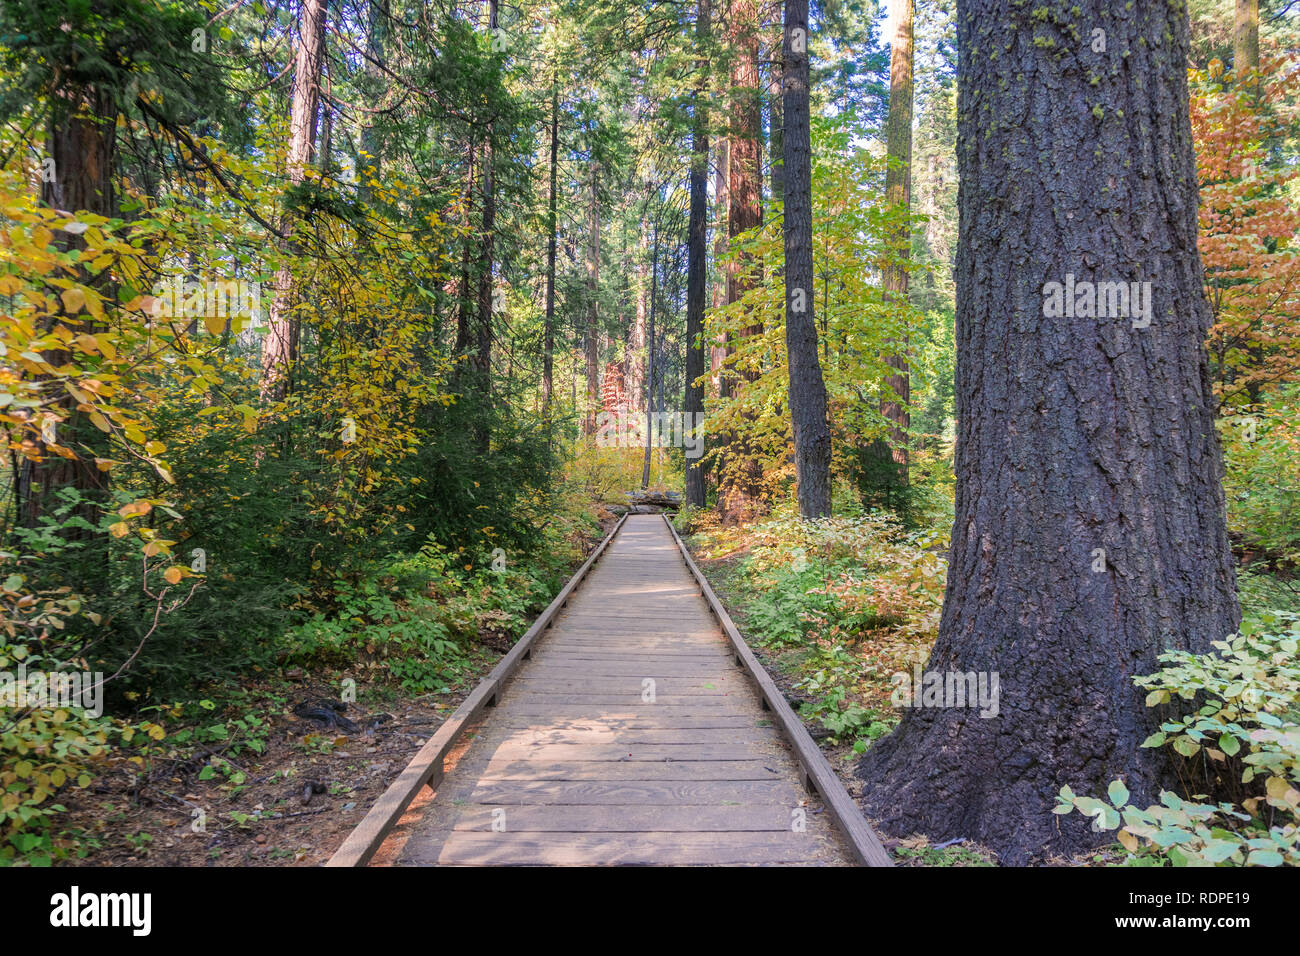 Promenade en bois au moyen d'une forêt d'arbres à feuilles persistantes, parc d'État Calaveras Big Trees, Californie Banque D'Images